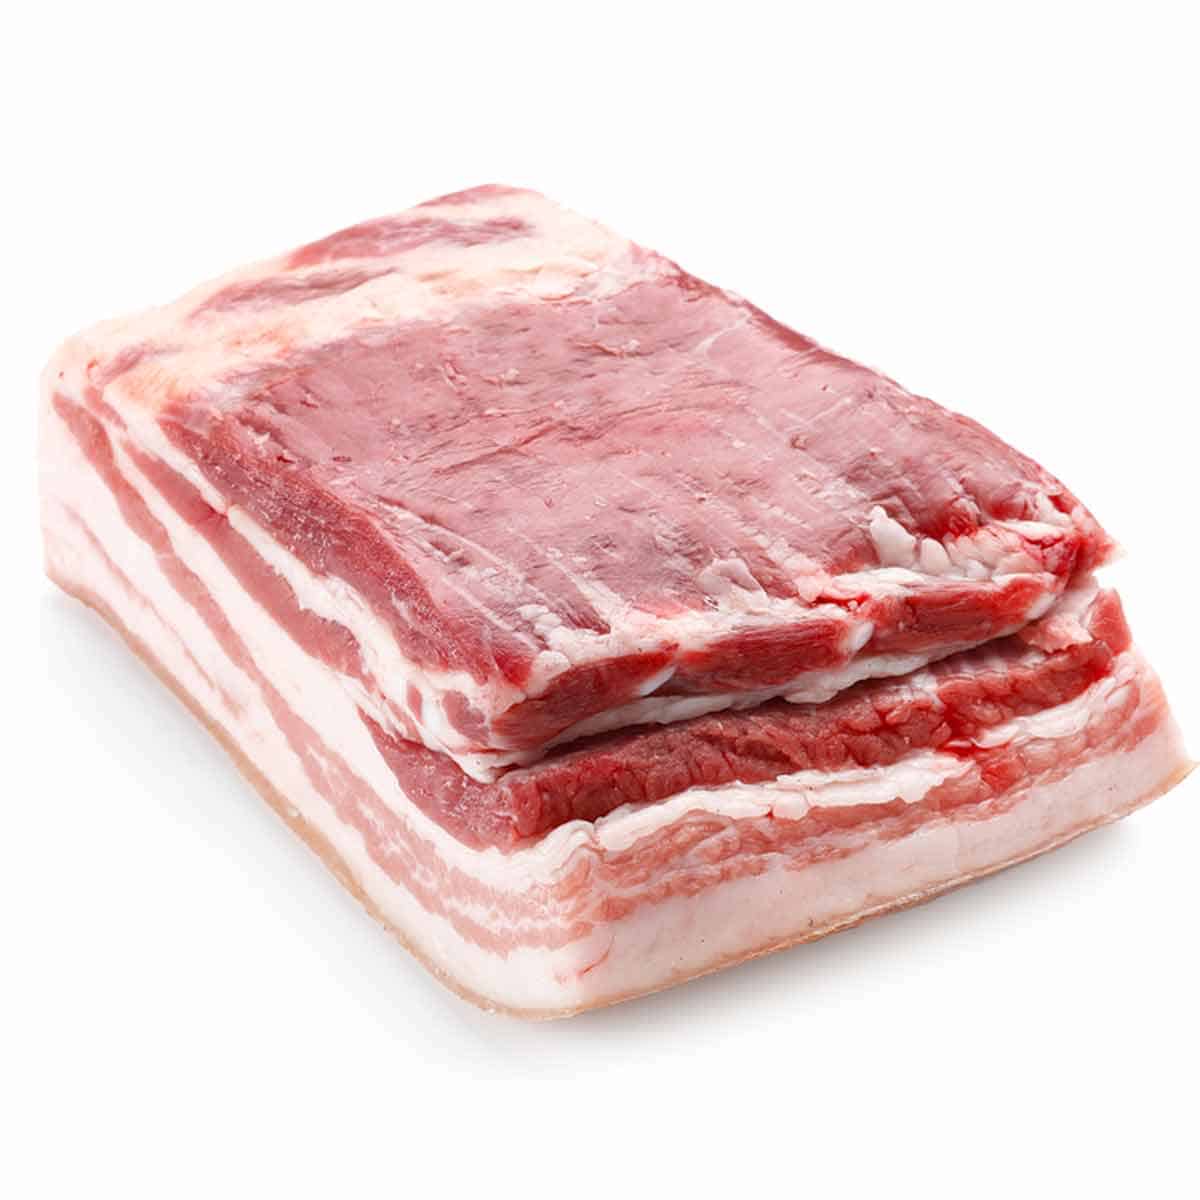 A large raw pork belly slab.